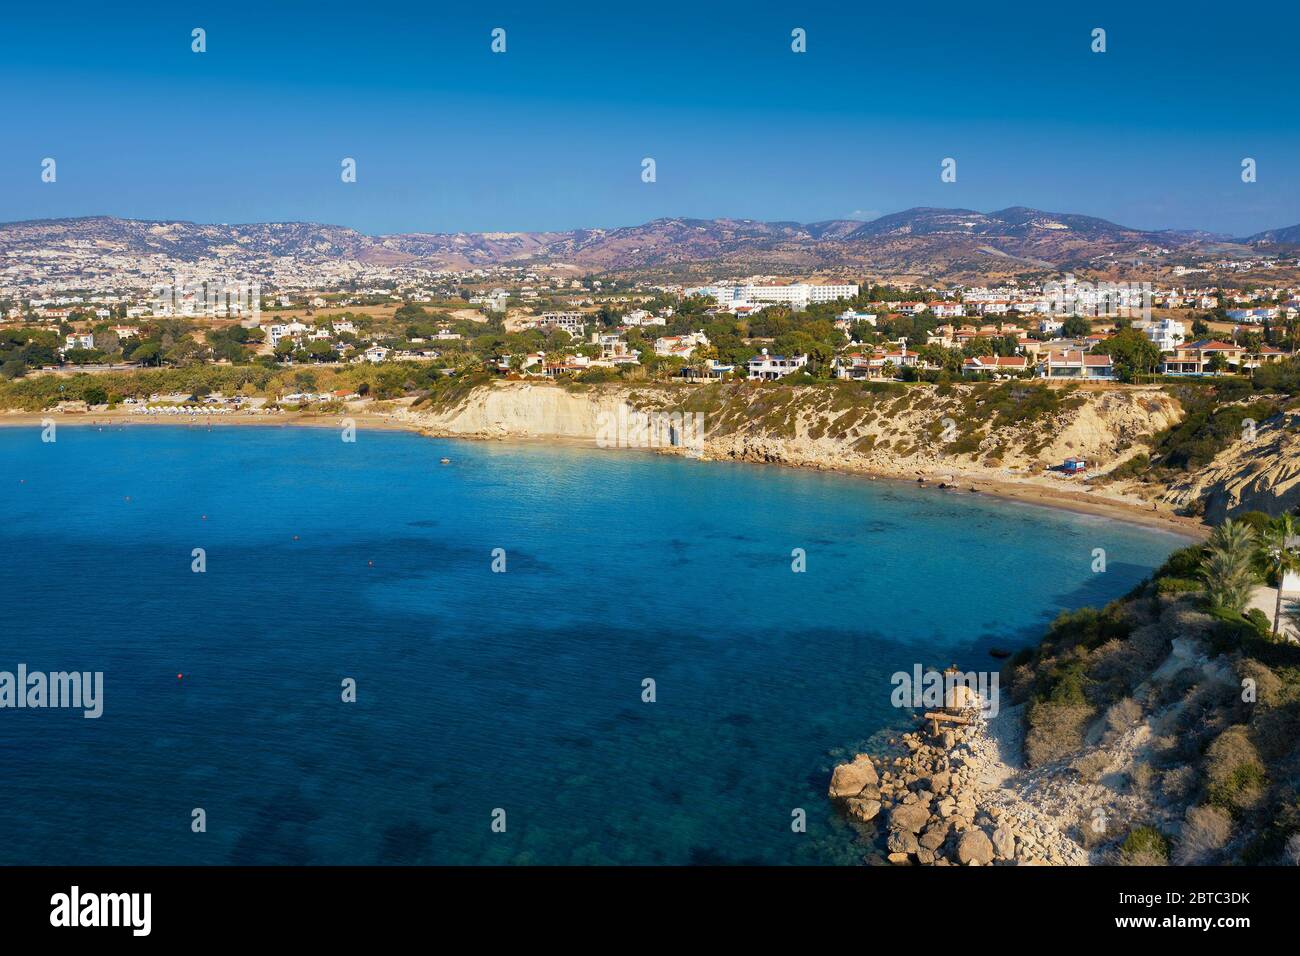 Vue aérienne de Chypre, côte, baie avec plage et eau de mer d'azur. Banque D'Images